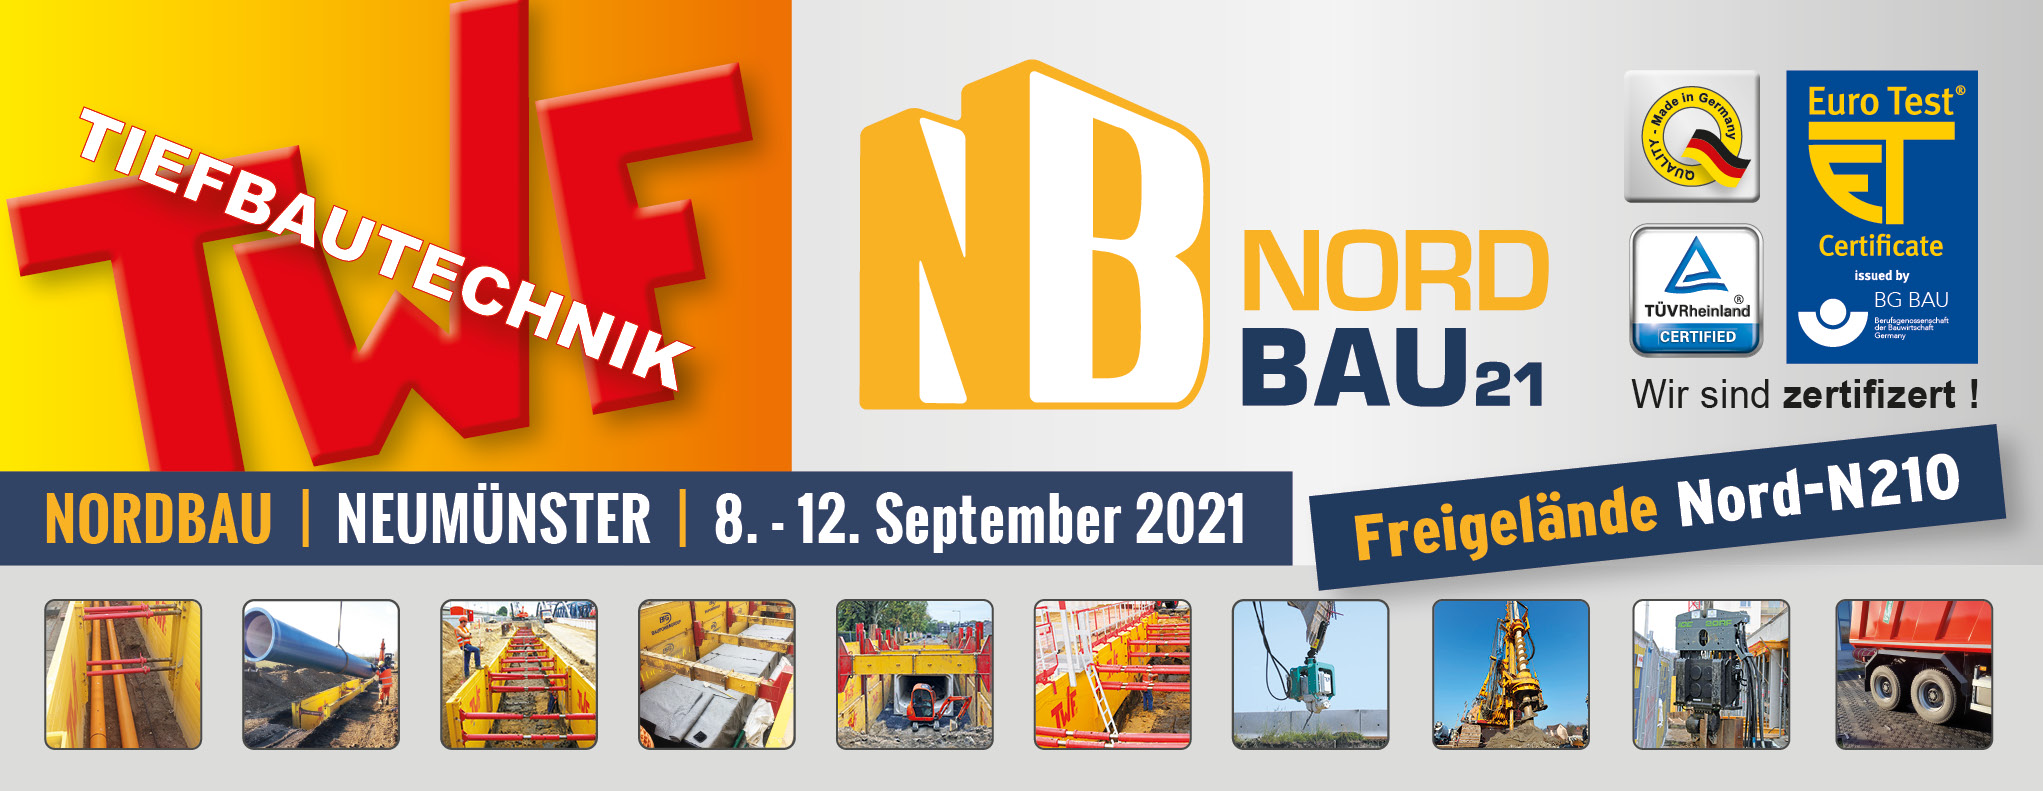 NordBau 2021   Slideshow 01